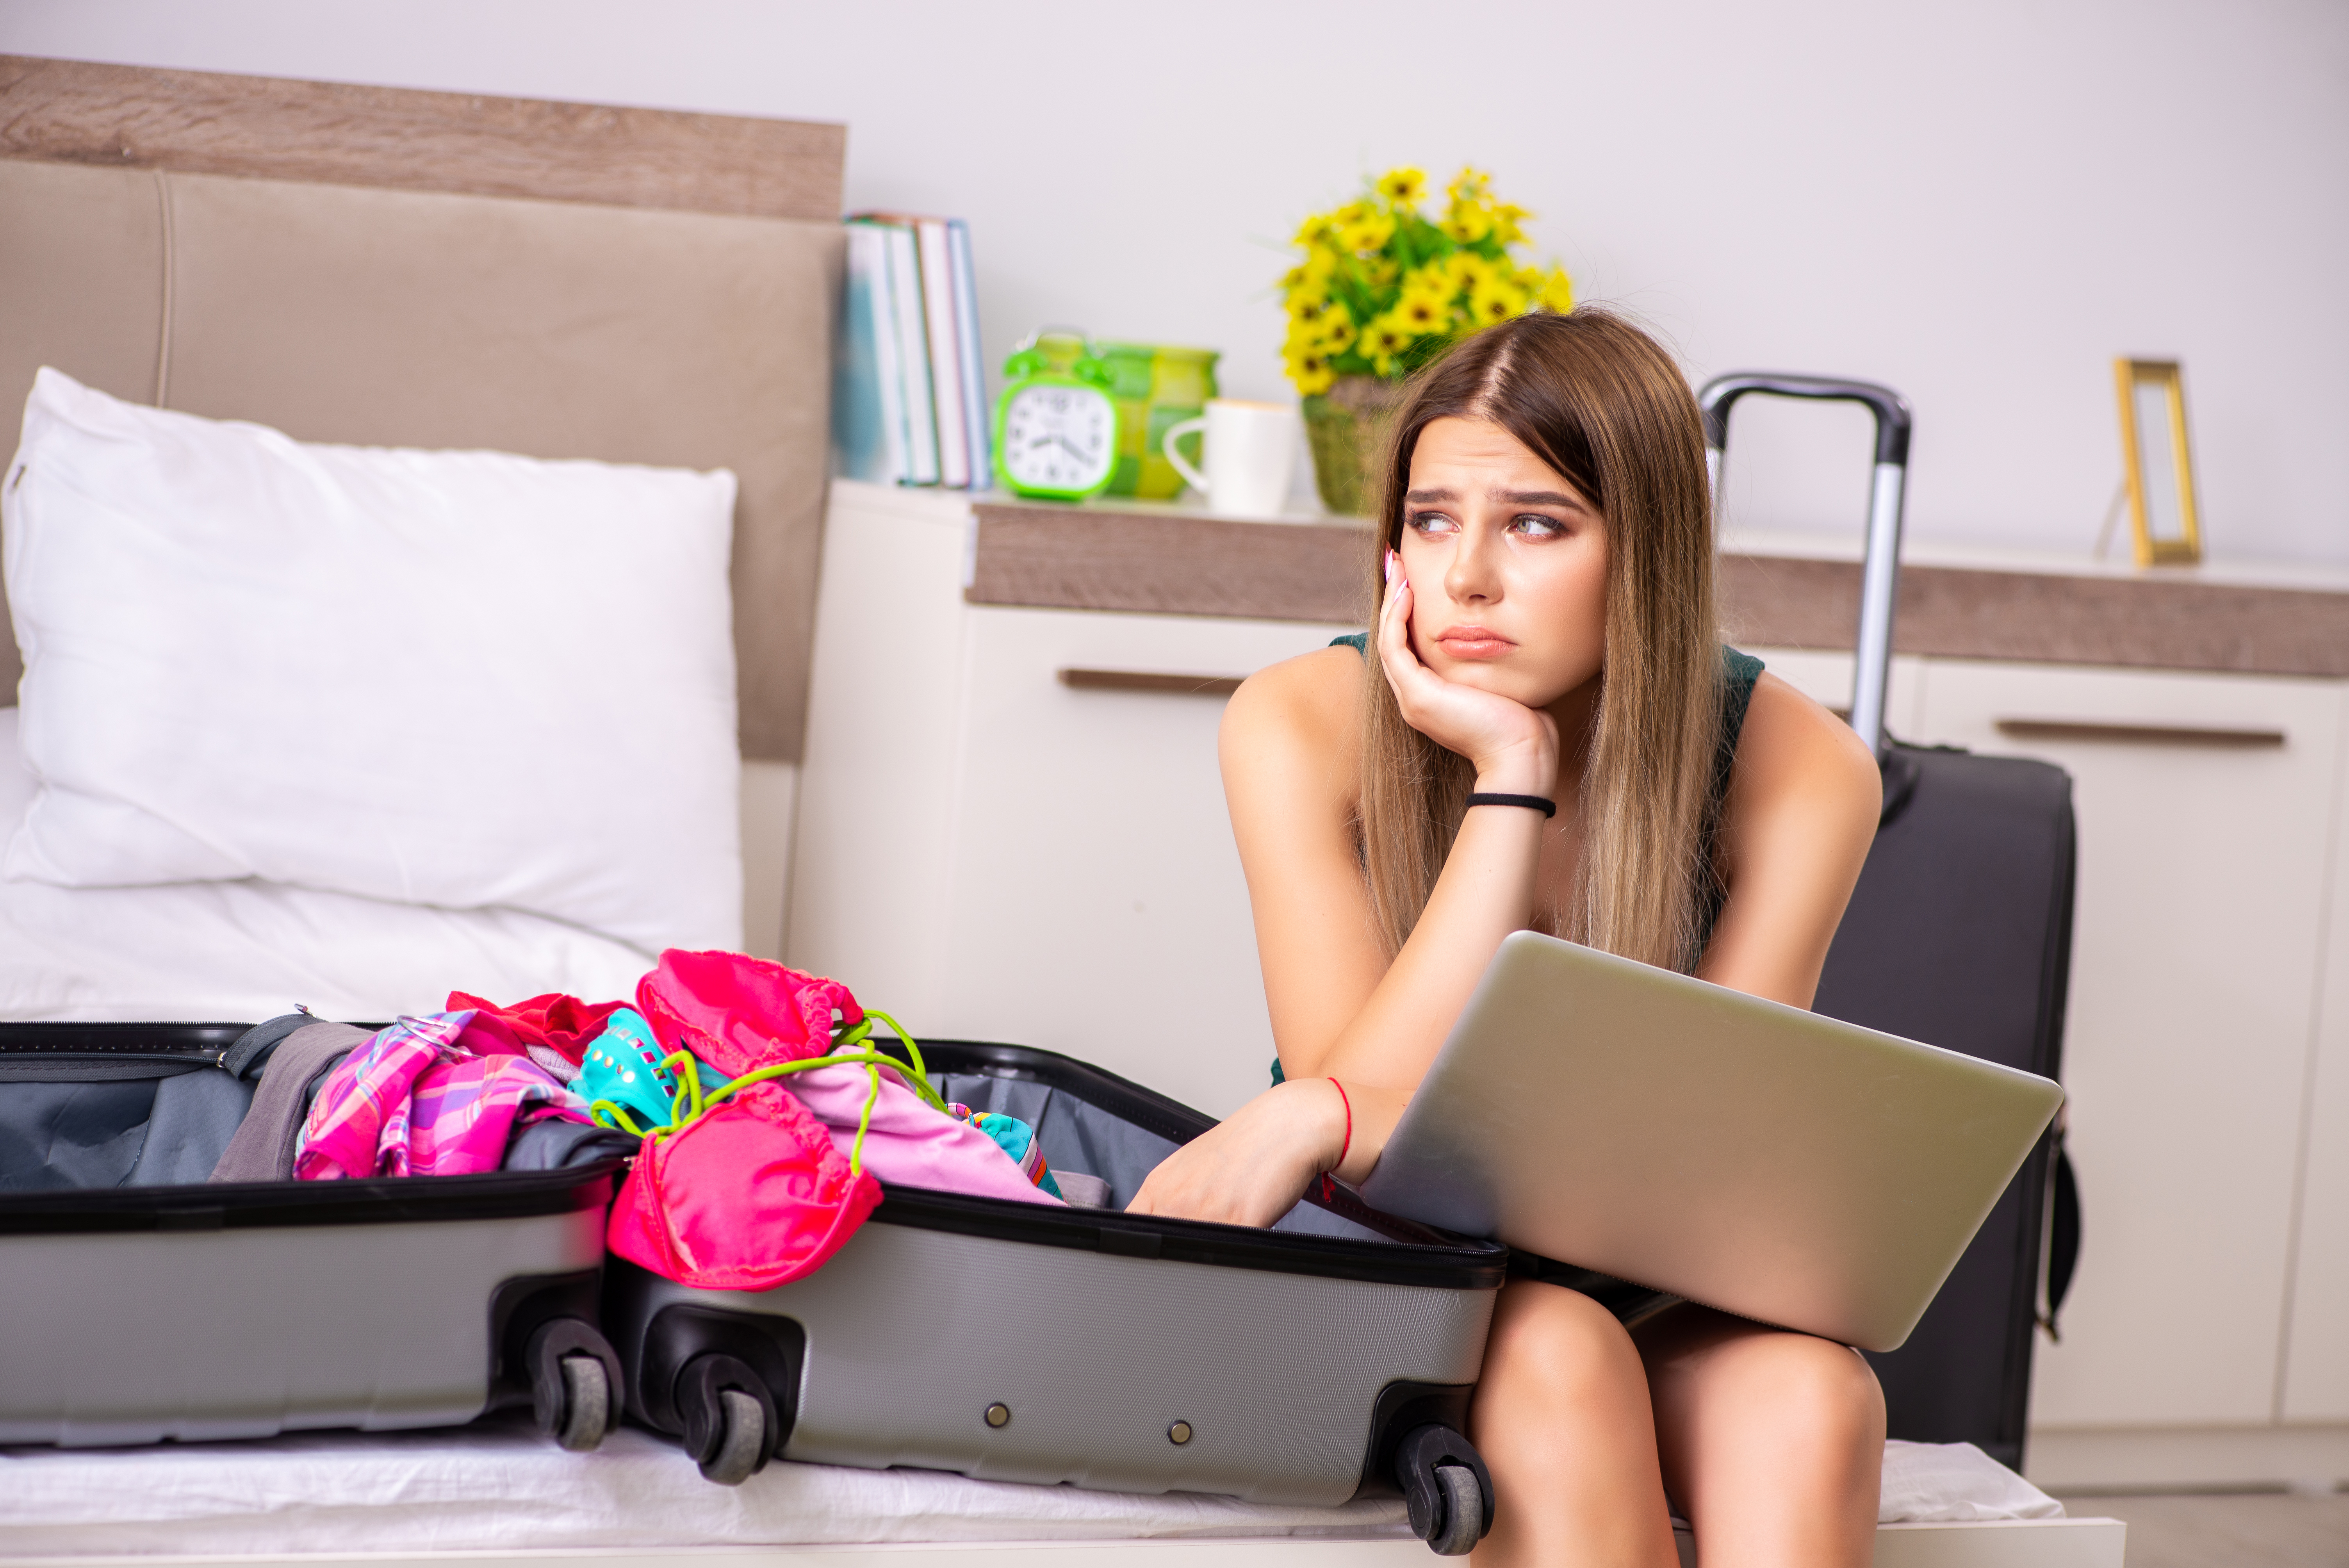 Jeune fille contrariée assise à côté d'une valise emballée | Source : Shutterstock